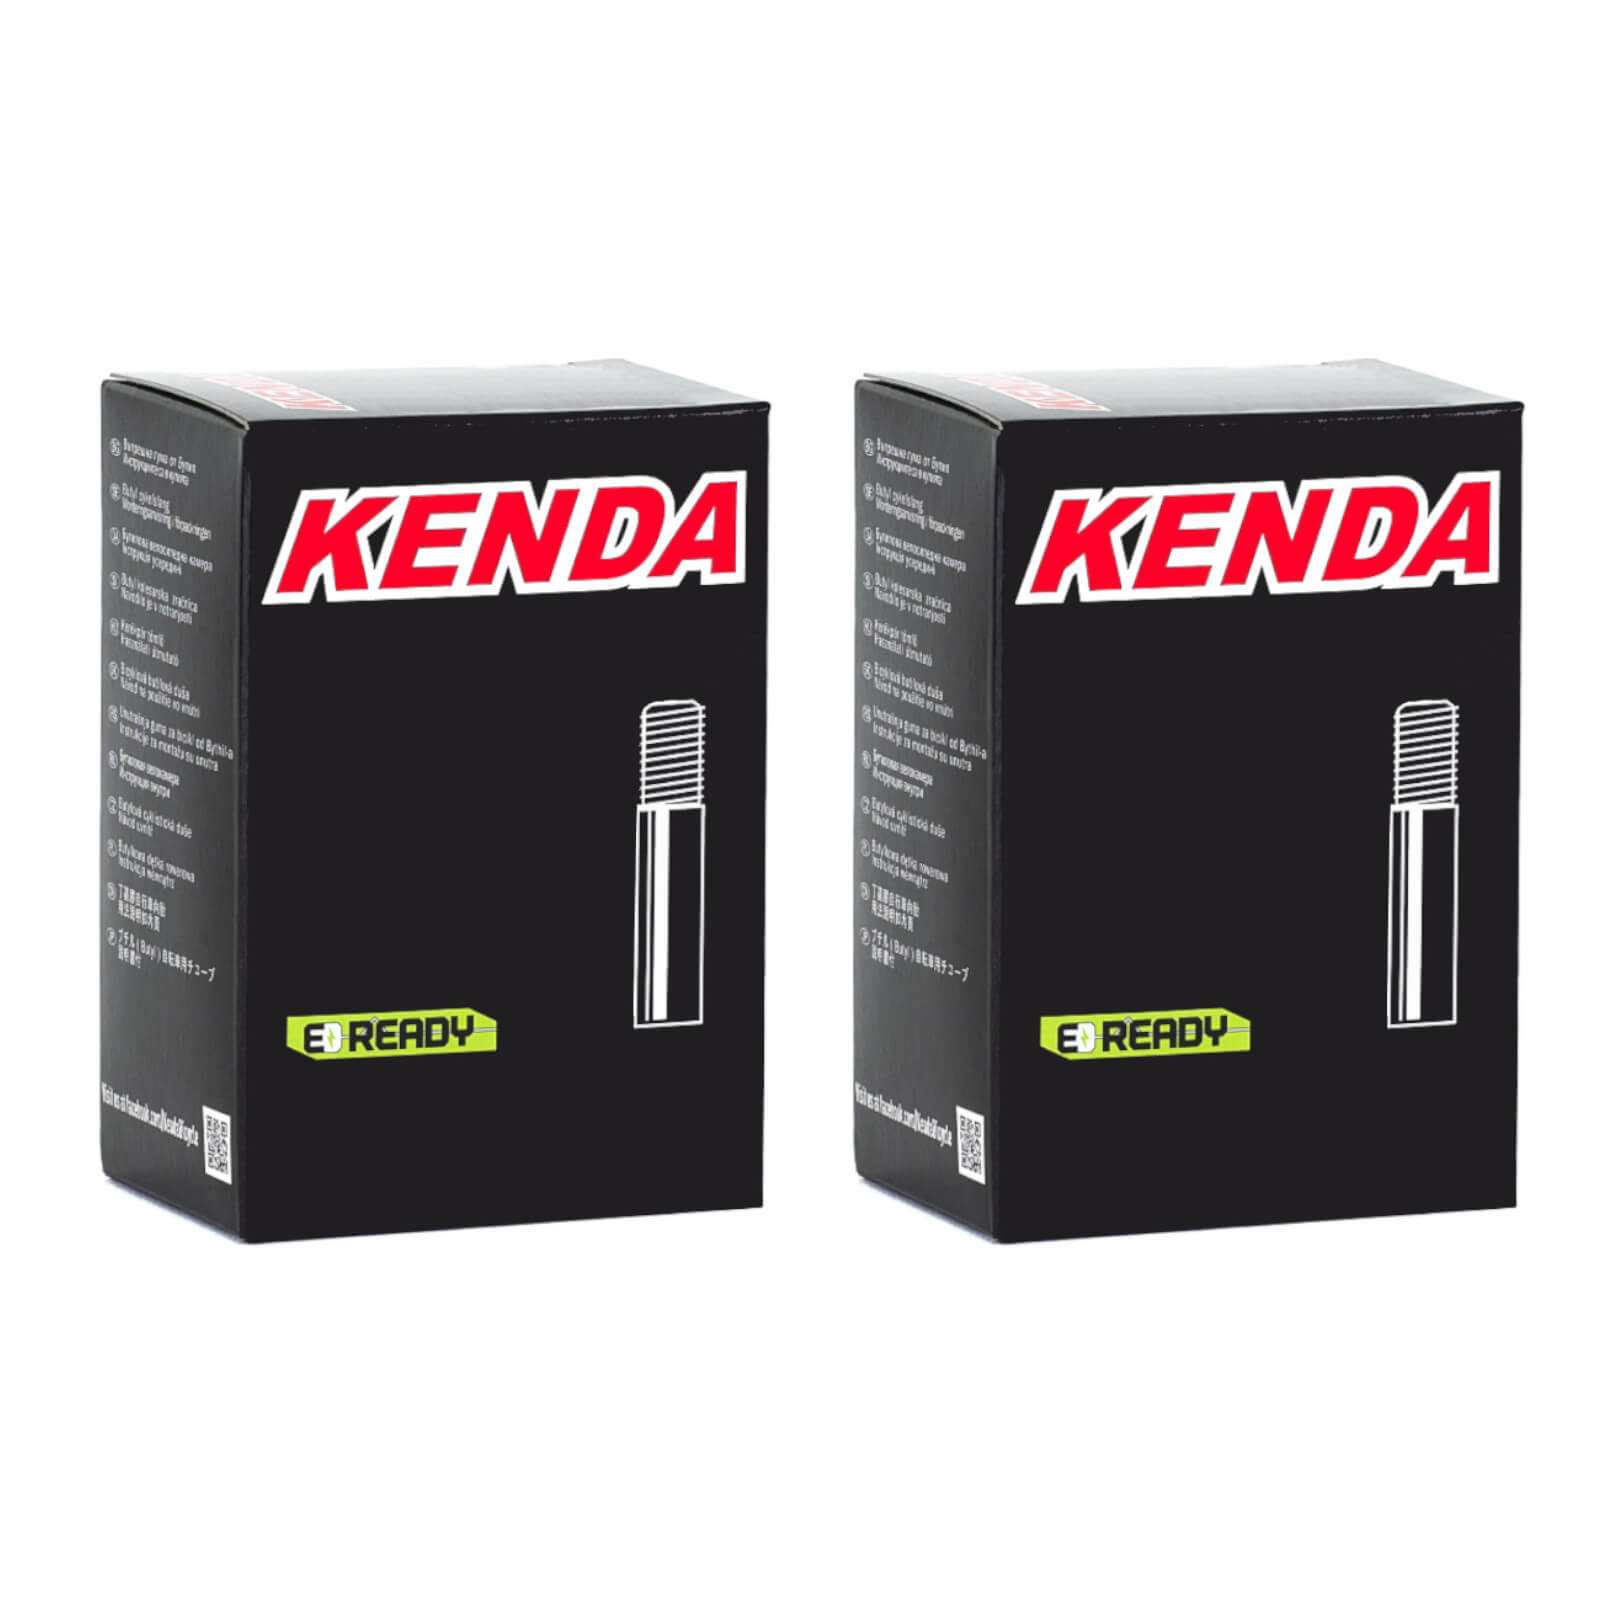 Kenda 14x1.5-2.25" 14 Inch Schrader Valve Bike Inner Tube Pack of 2